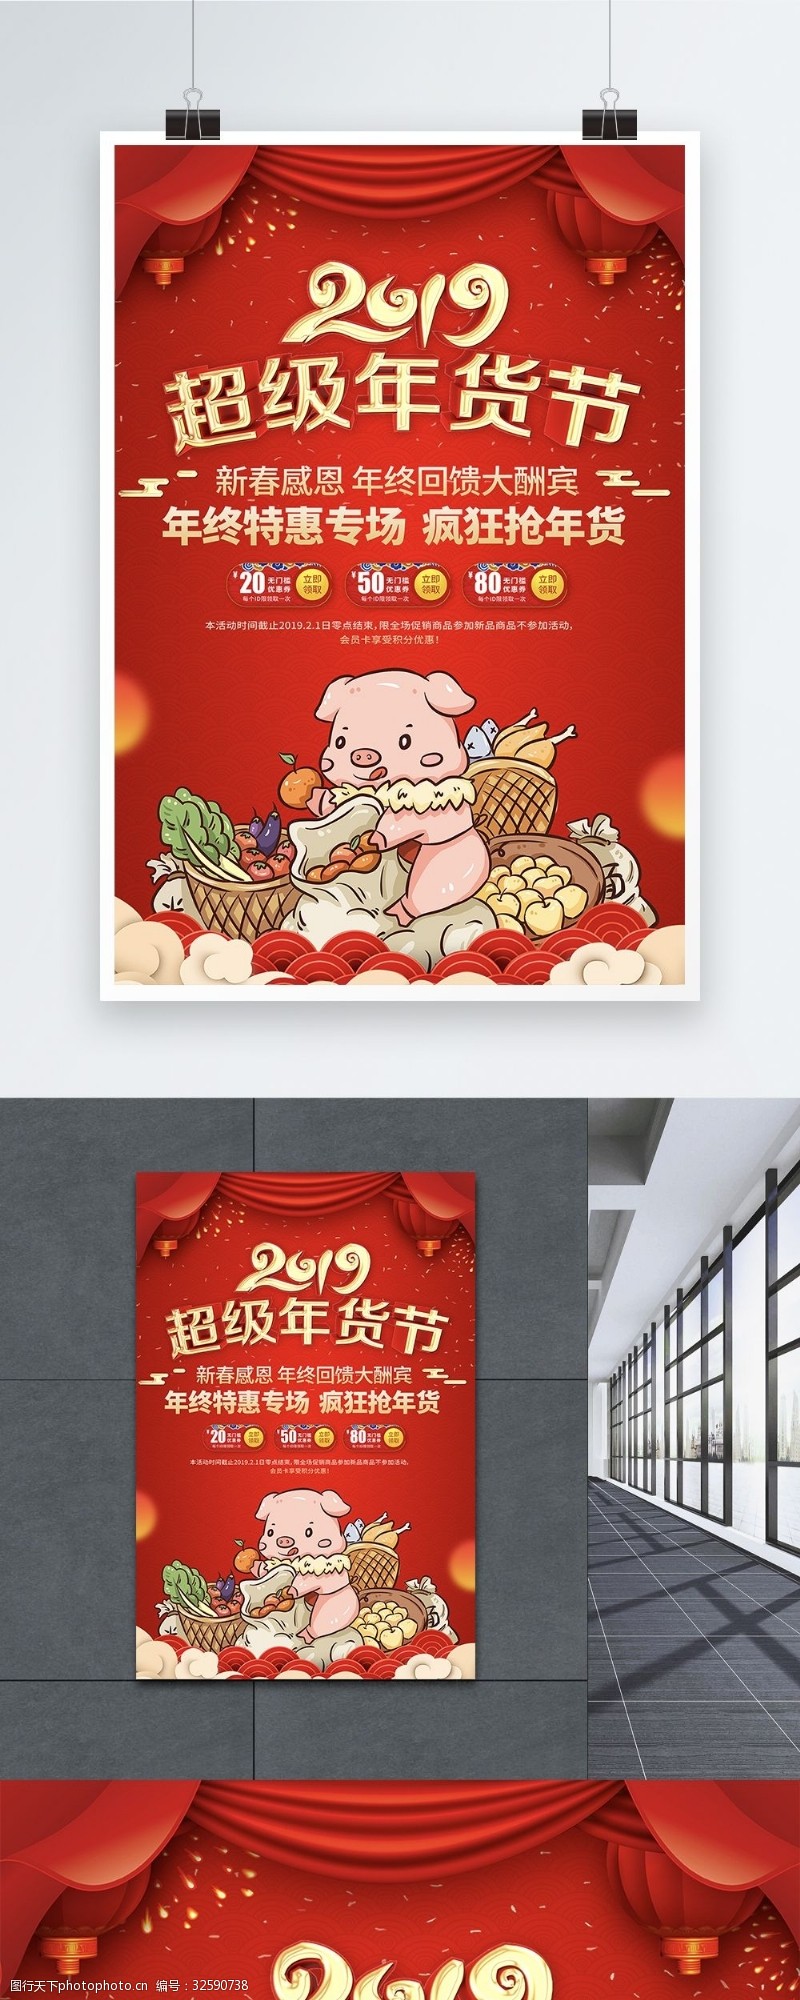 红色喜庆2019超级年货节促销海报